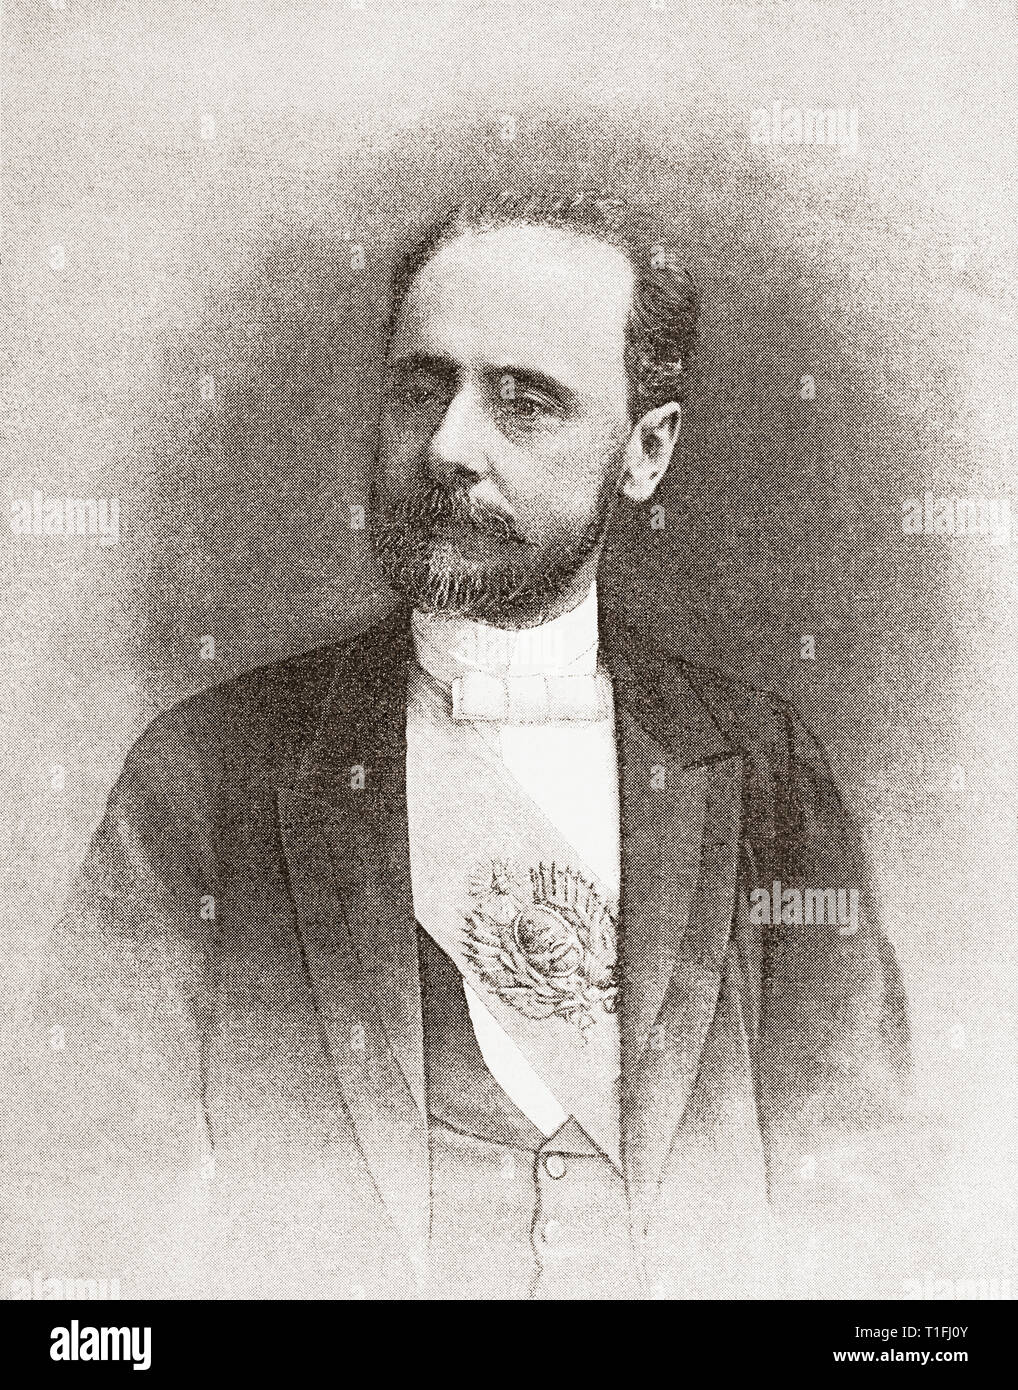 Miguel Angel Juarez Celman, 1844 - 1909. Anwalt, Politiker und Präsident von Argentinien. Von Ilustracion Artistica, veröffentlicht 1887. Stockfoto